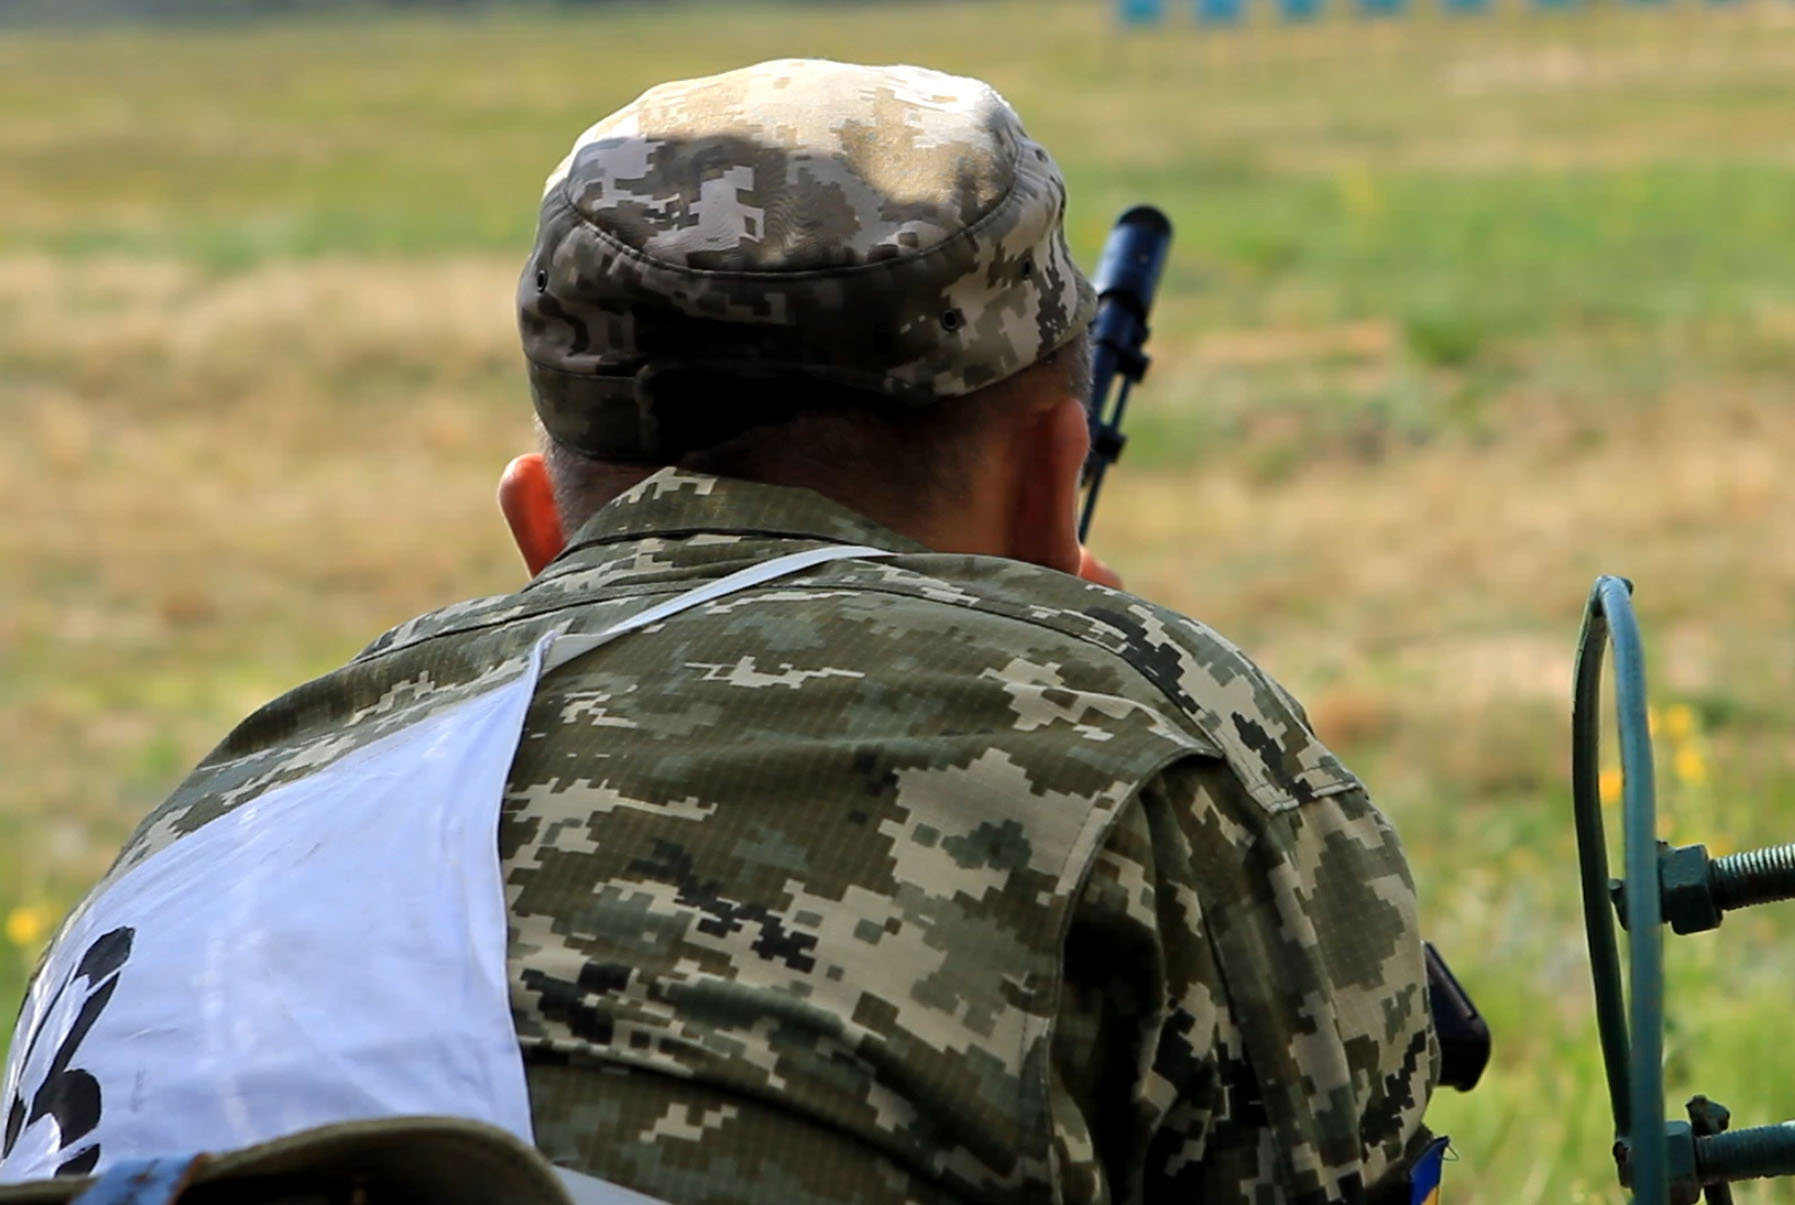 Воєнізований крос: на Чернігівщині військові подолали кілометри (Фото)